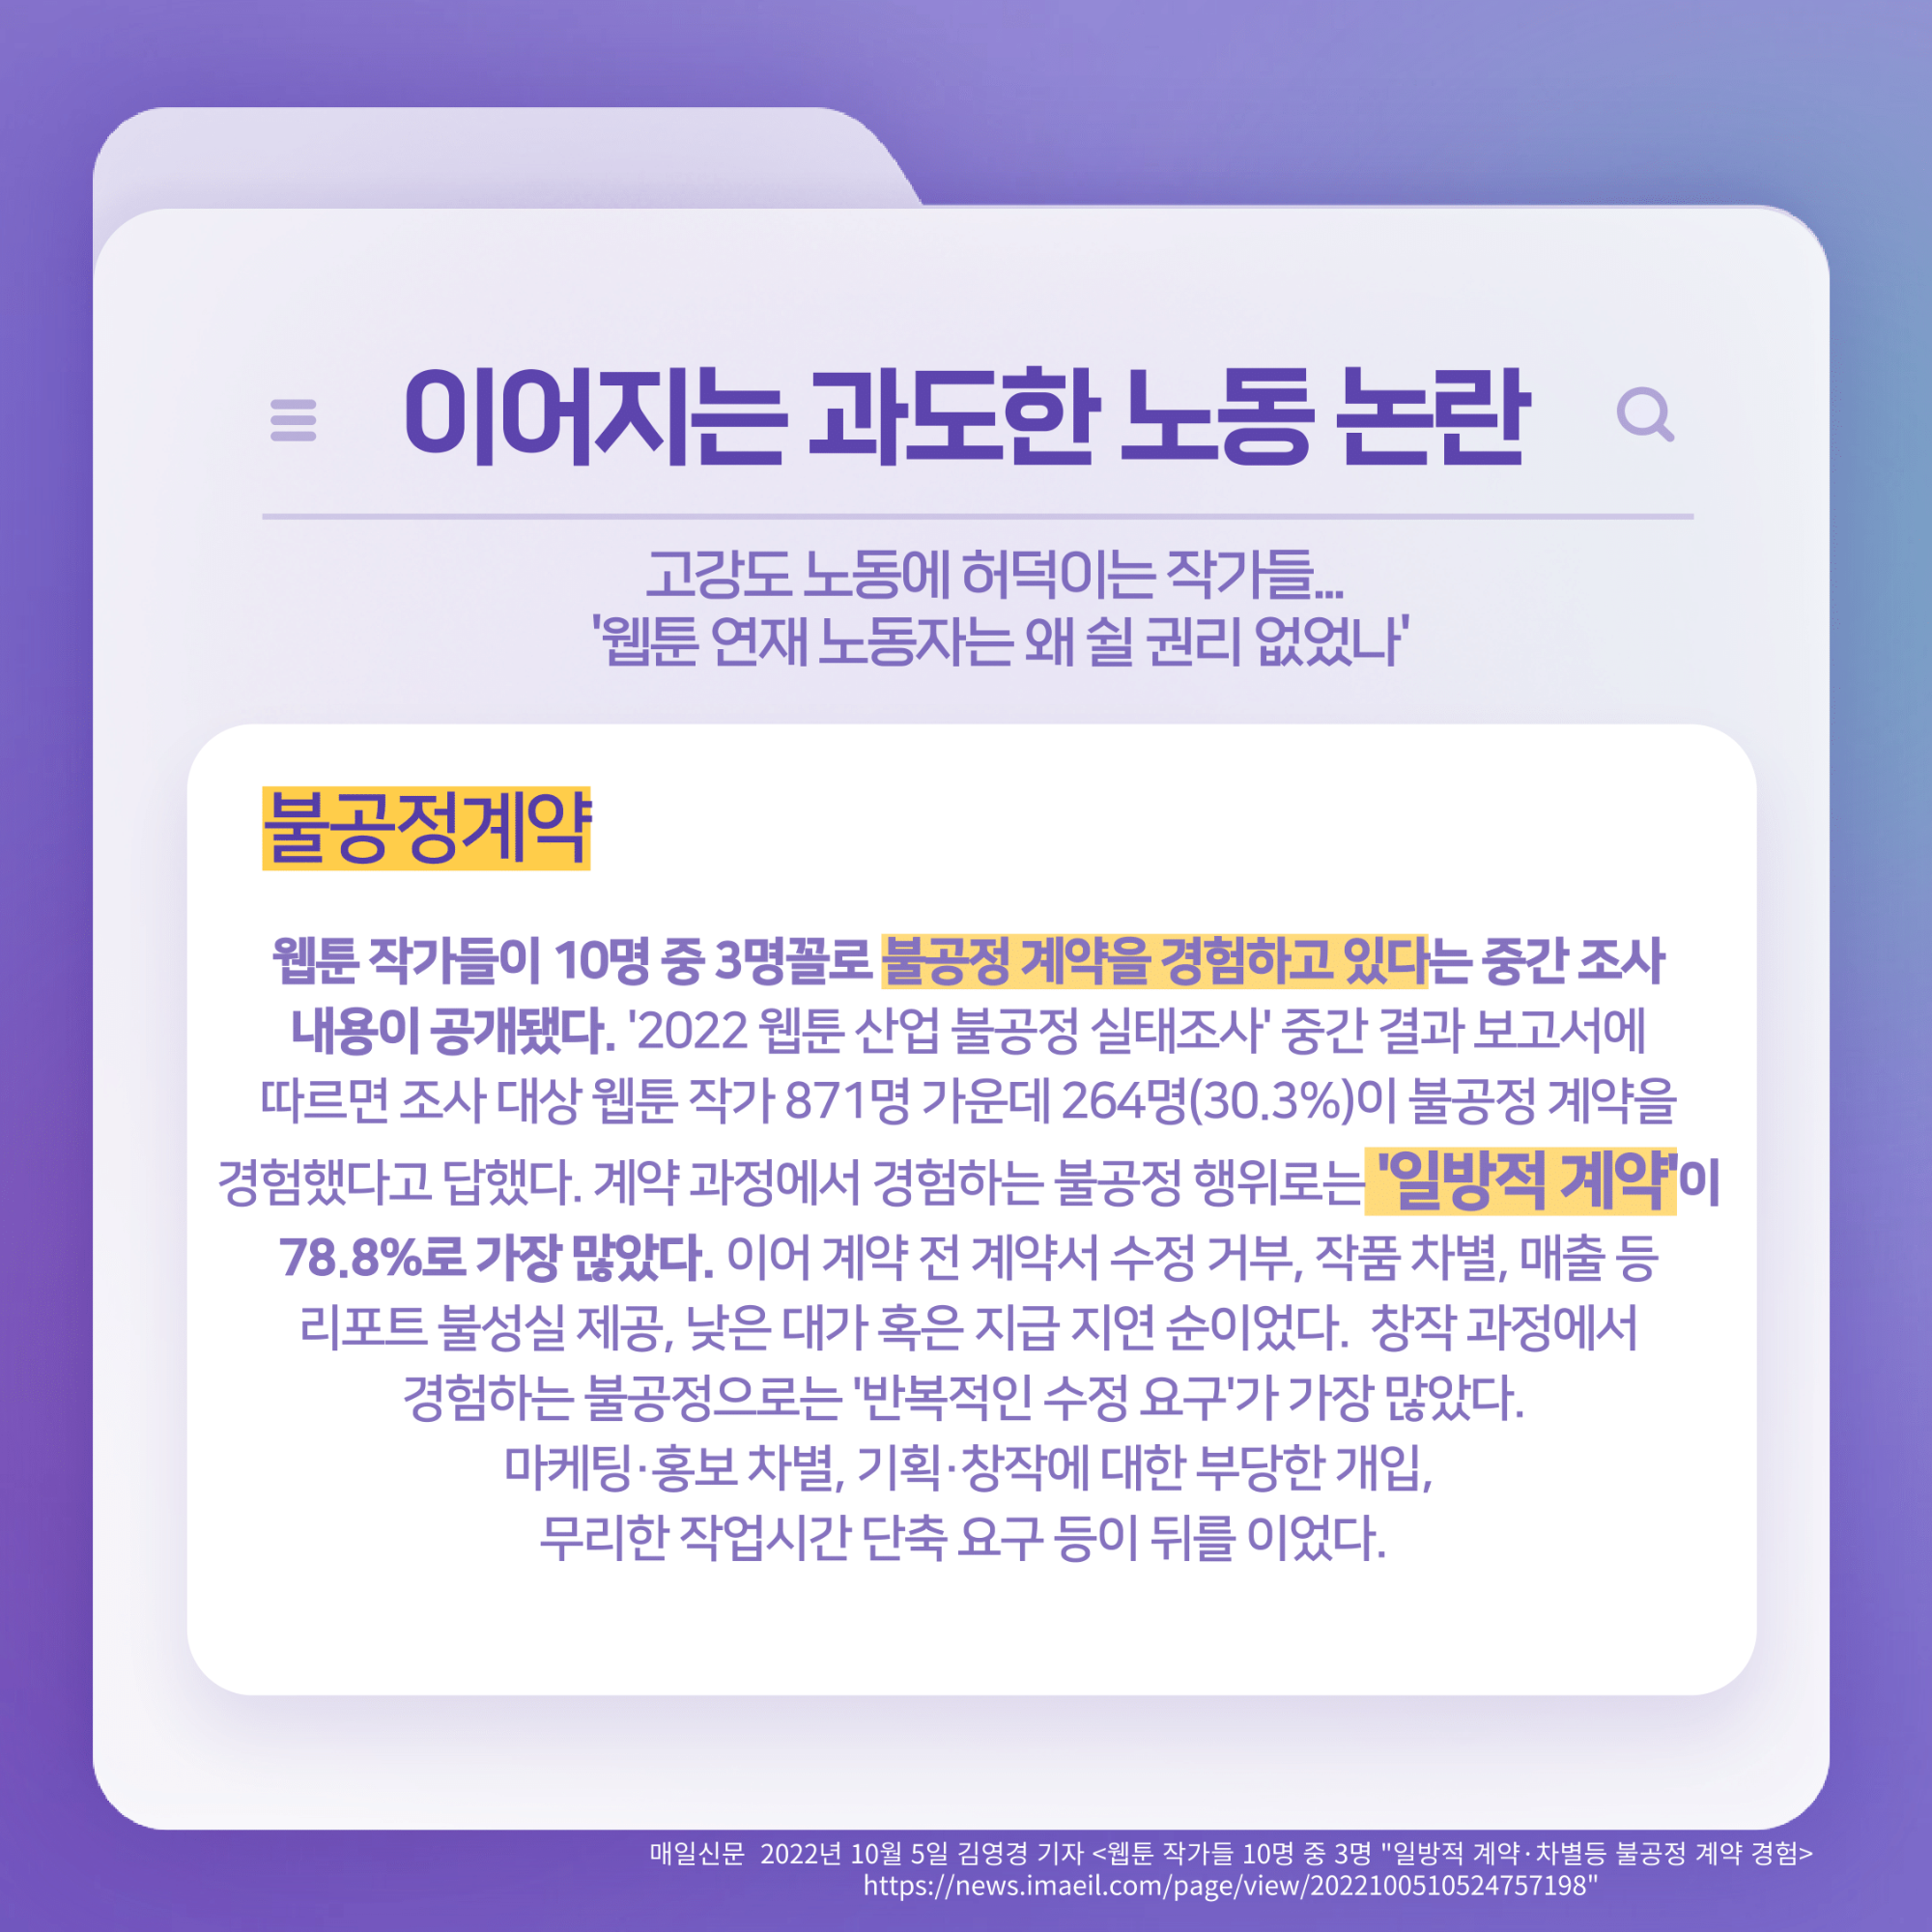 167호 K-웹툰의 노동 문제 심각성-6.png